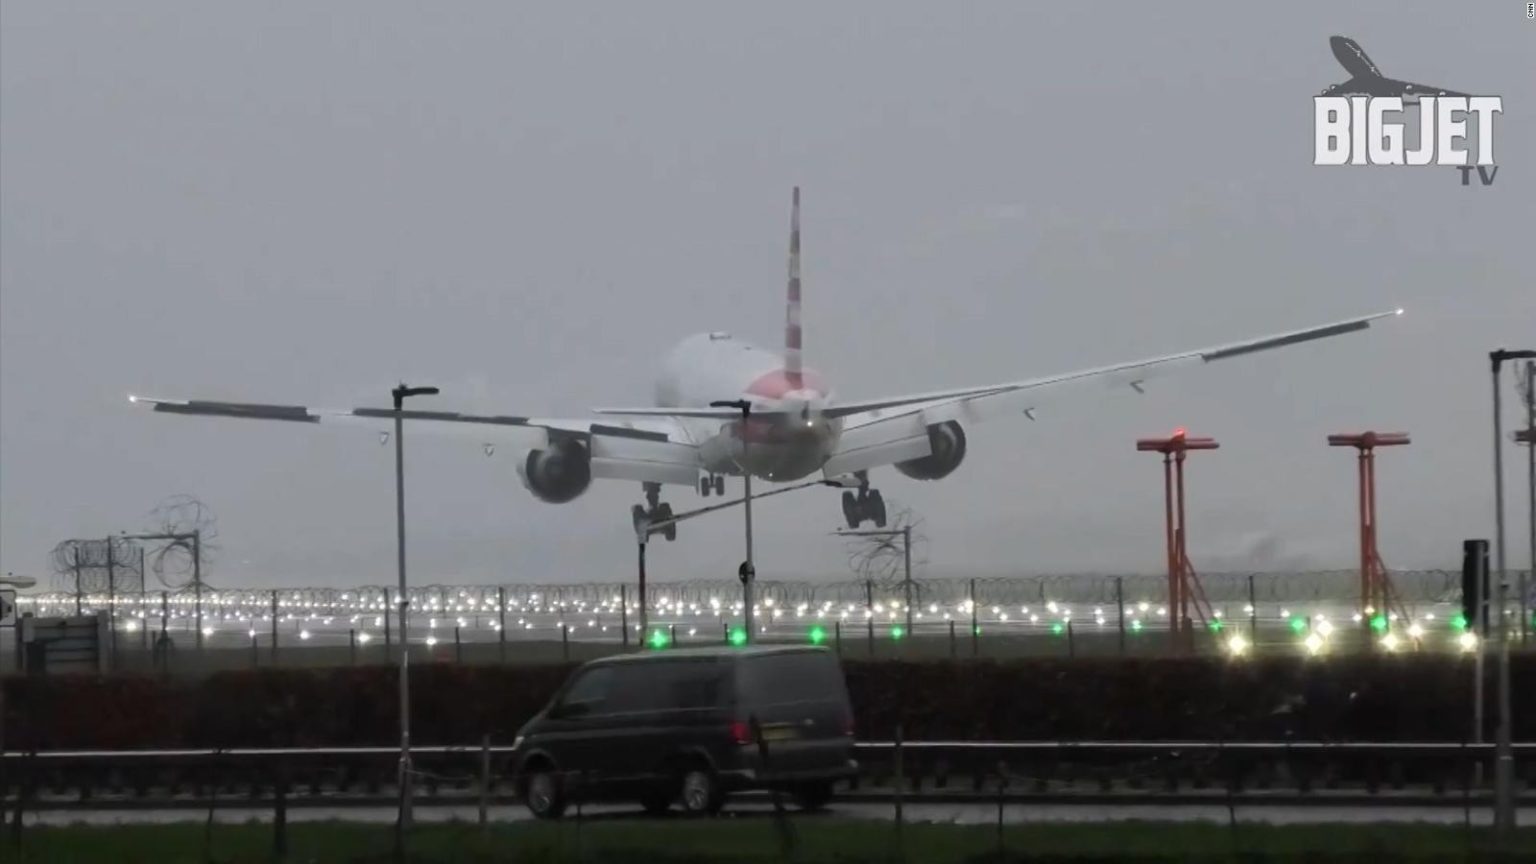 aterrizaje de un avion en el aeropuerto de Londres eljacaguero